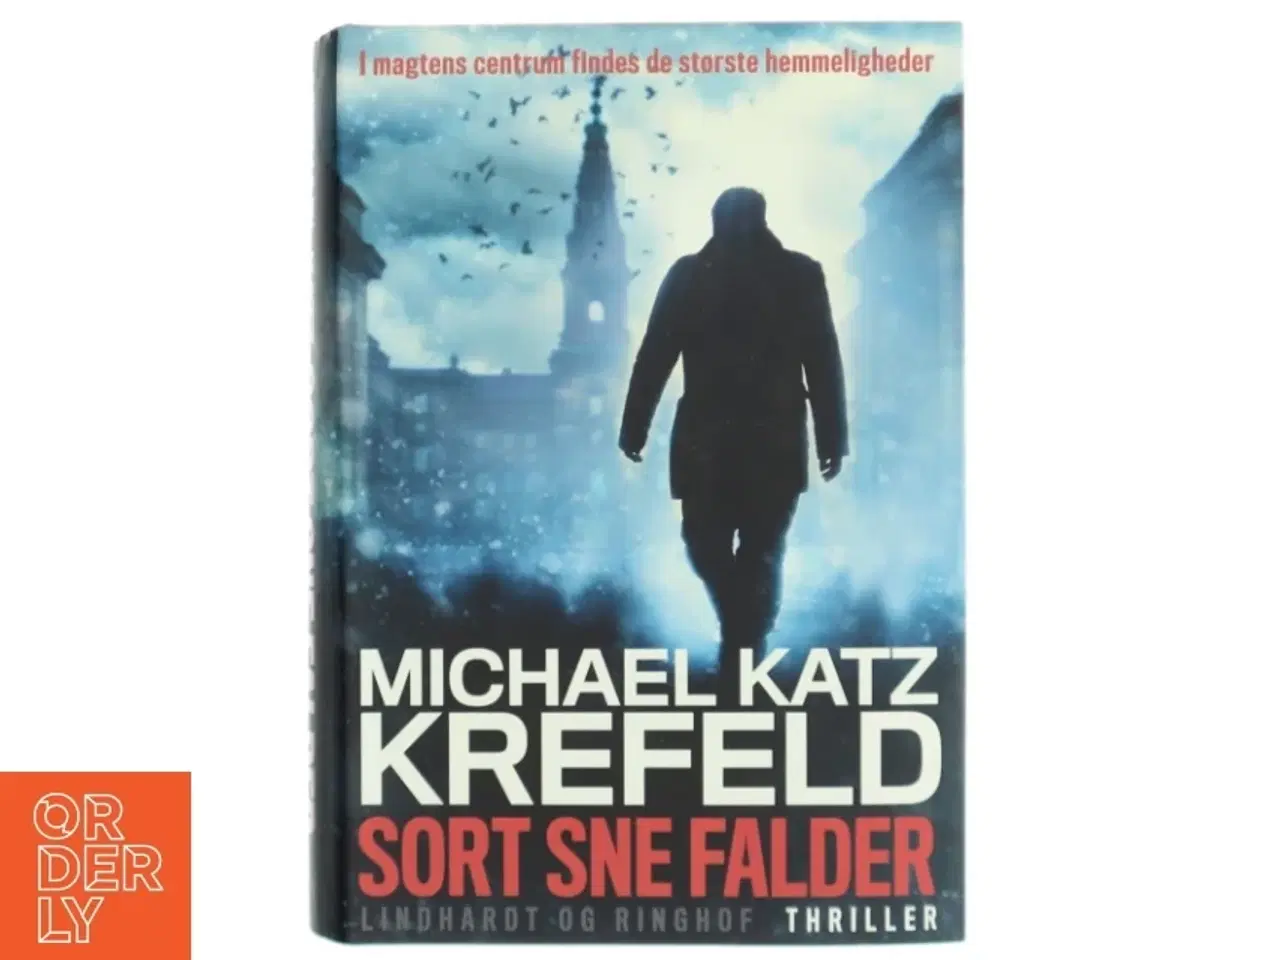 Billede 1 - 'Sort sne falder' af Michael Katz Krefeld (bog) fra Lindhardt og Ringhof